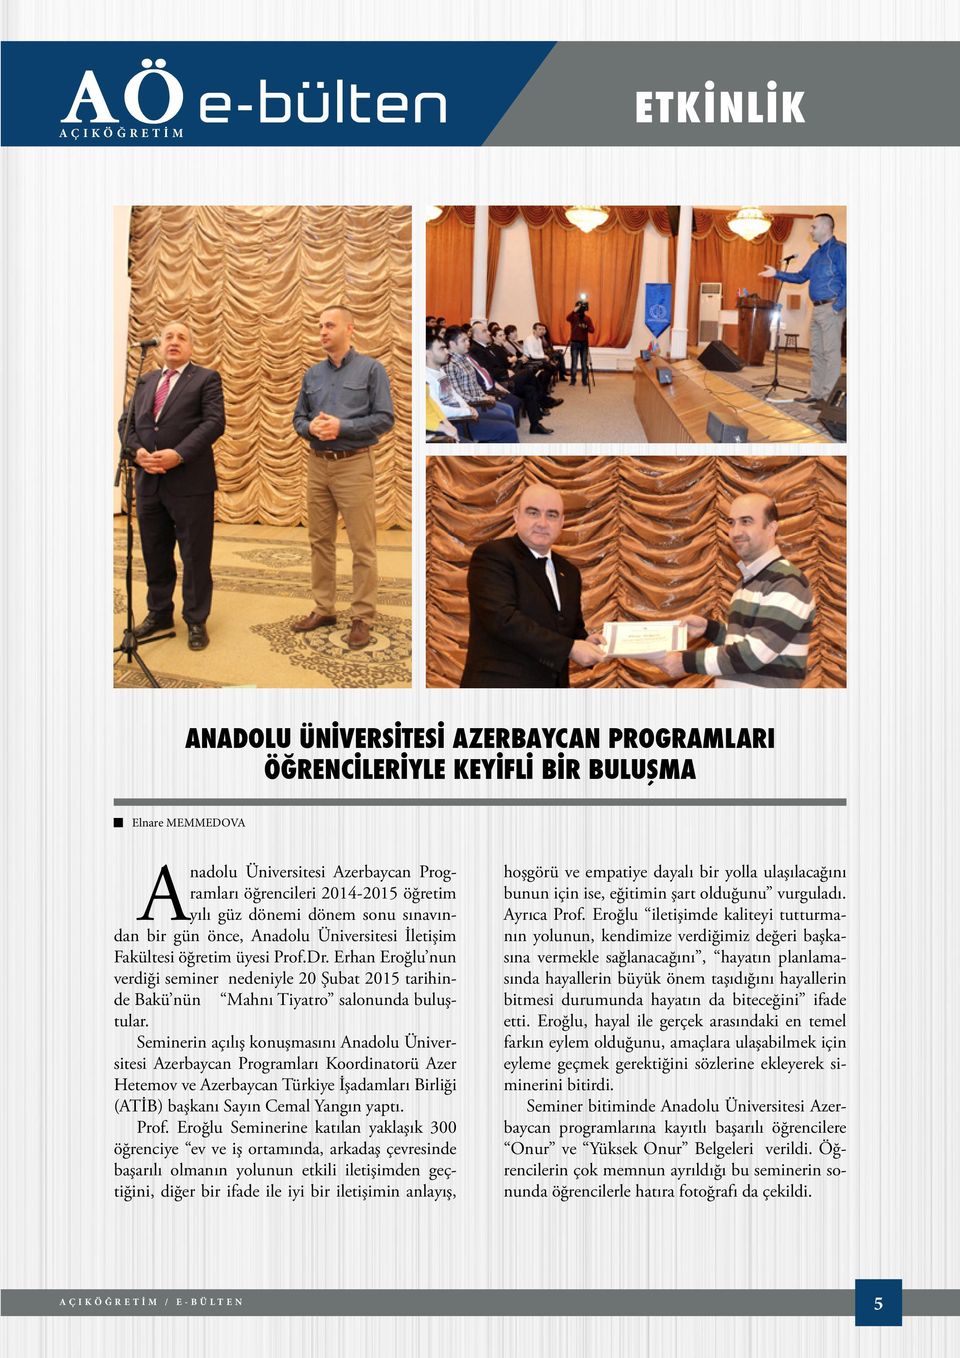 Erhan Eroğlu nun verdiği seminer nedeniyle 20 Şubat 2015 tarihinde Bakü nün Mahnı Tiyatro salonunda buluştular.